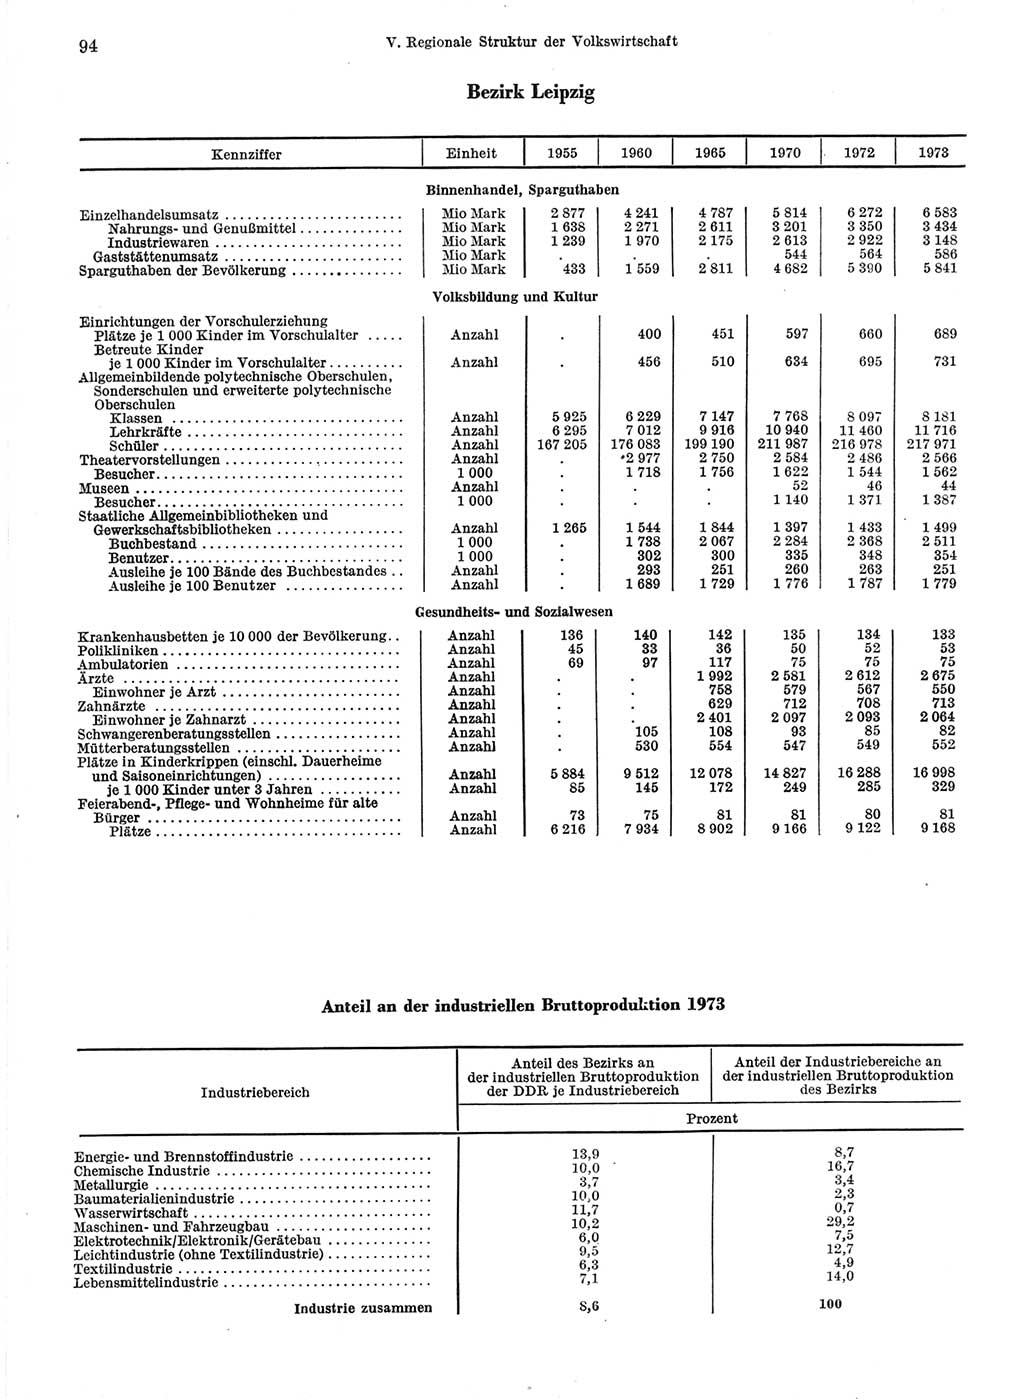 Statistisches Jahrbuch der Deutschen Demokratischen Republik (DDR) 1974, Seite 94 (Stat. Jb. DDR 1974, S. 94)